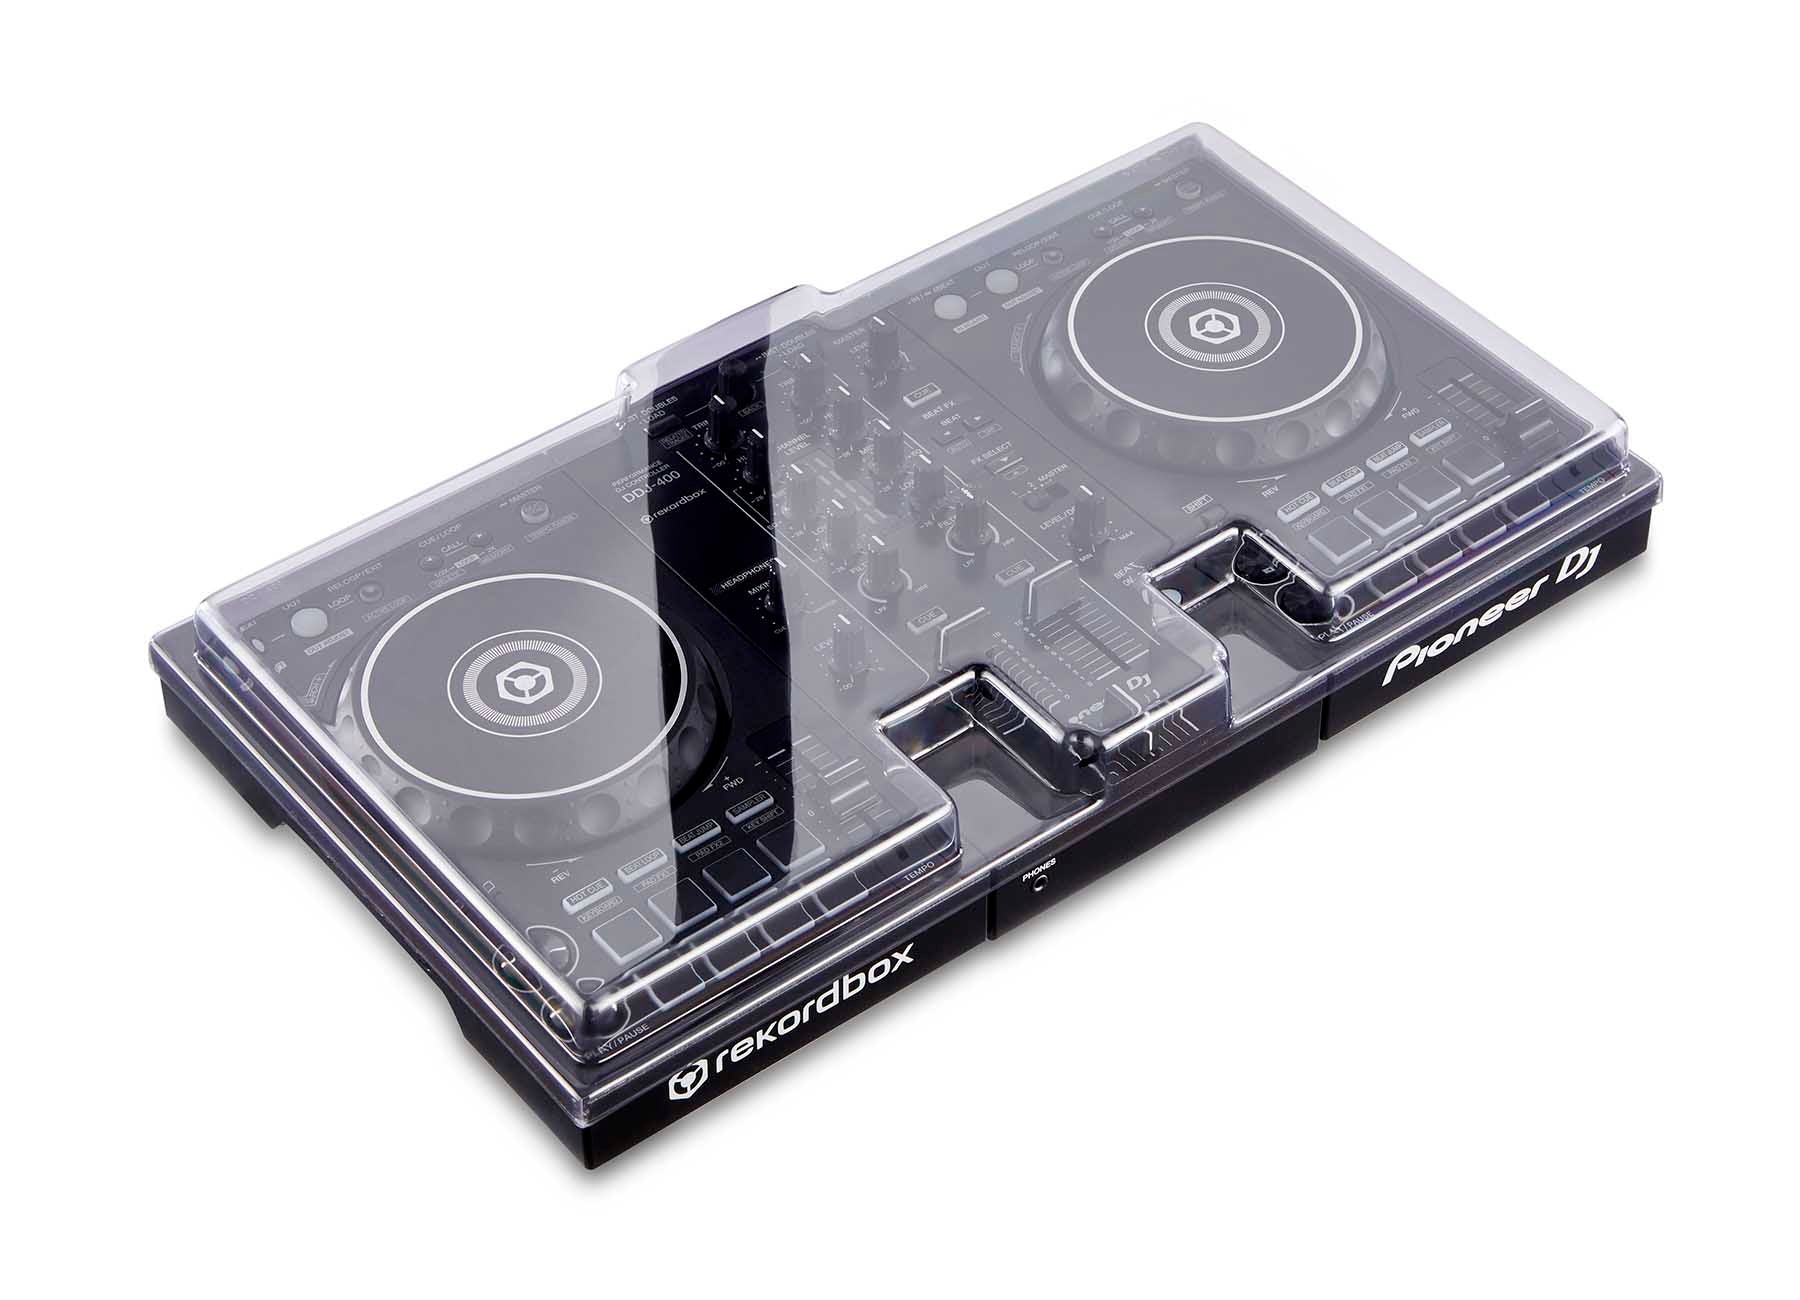 Decksaver DSLE-PC-DDJ400 Protection Cover For Pioneer DDJ-400 DJ Controller - Hollywood DJ